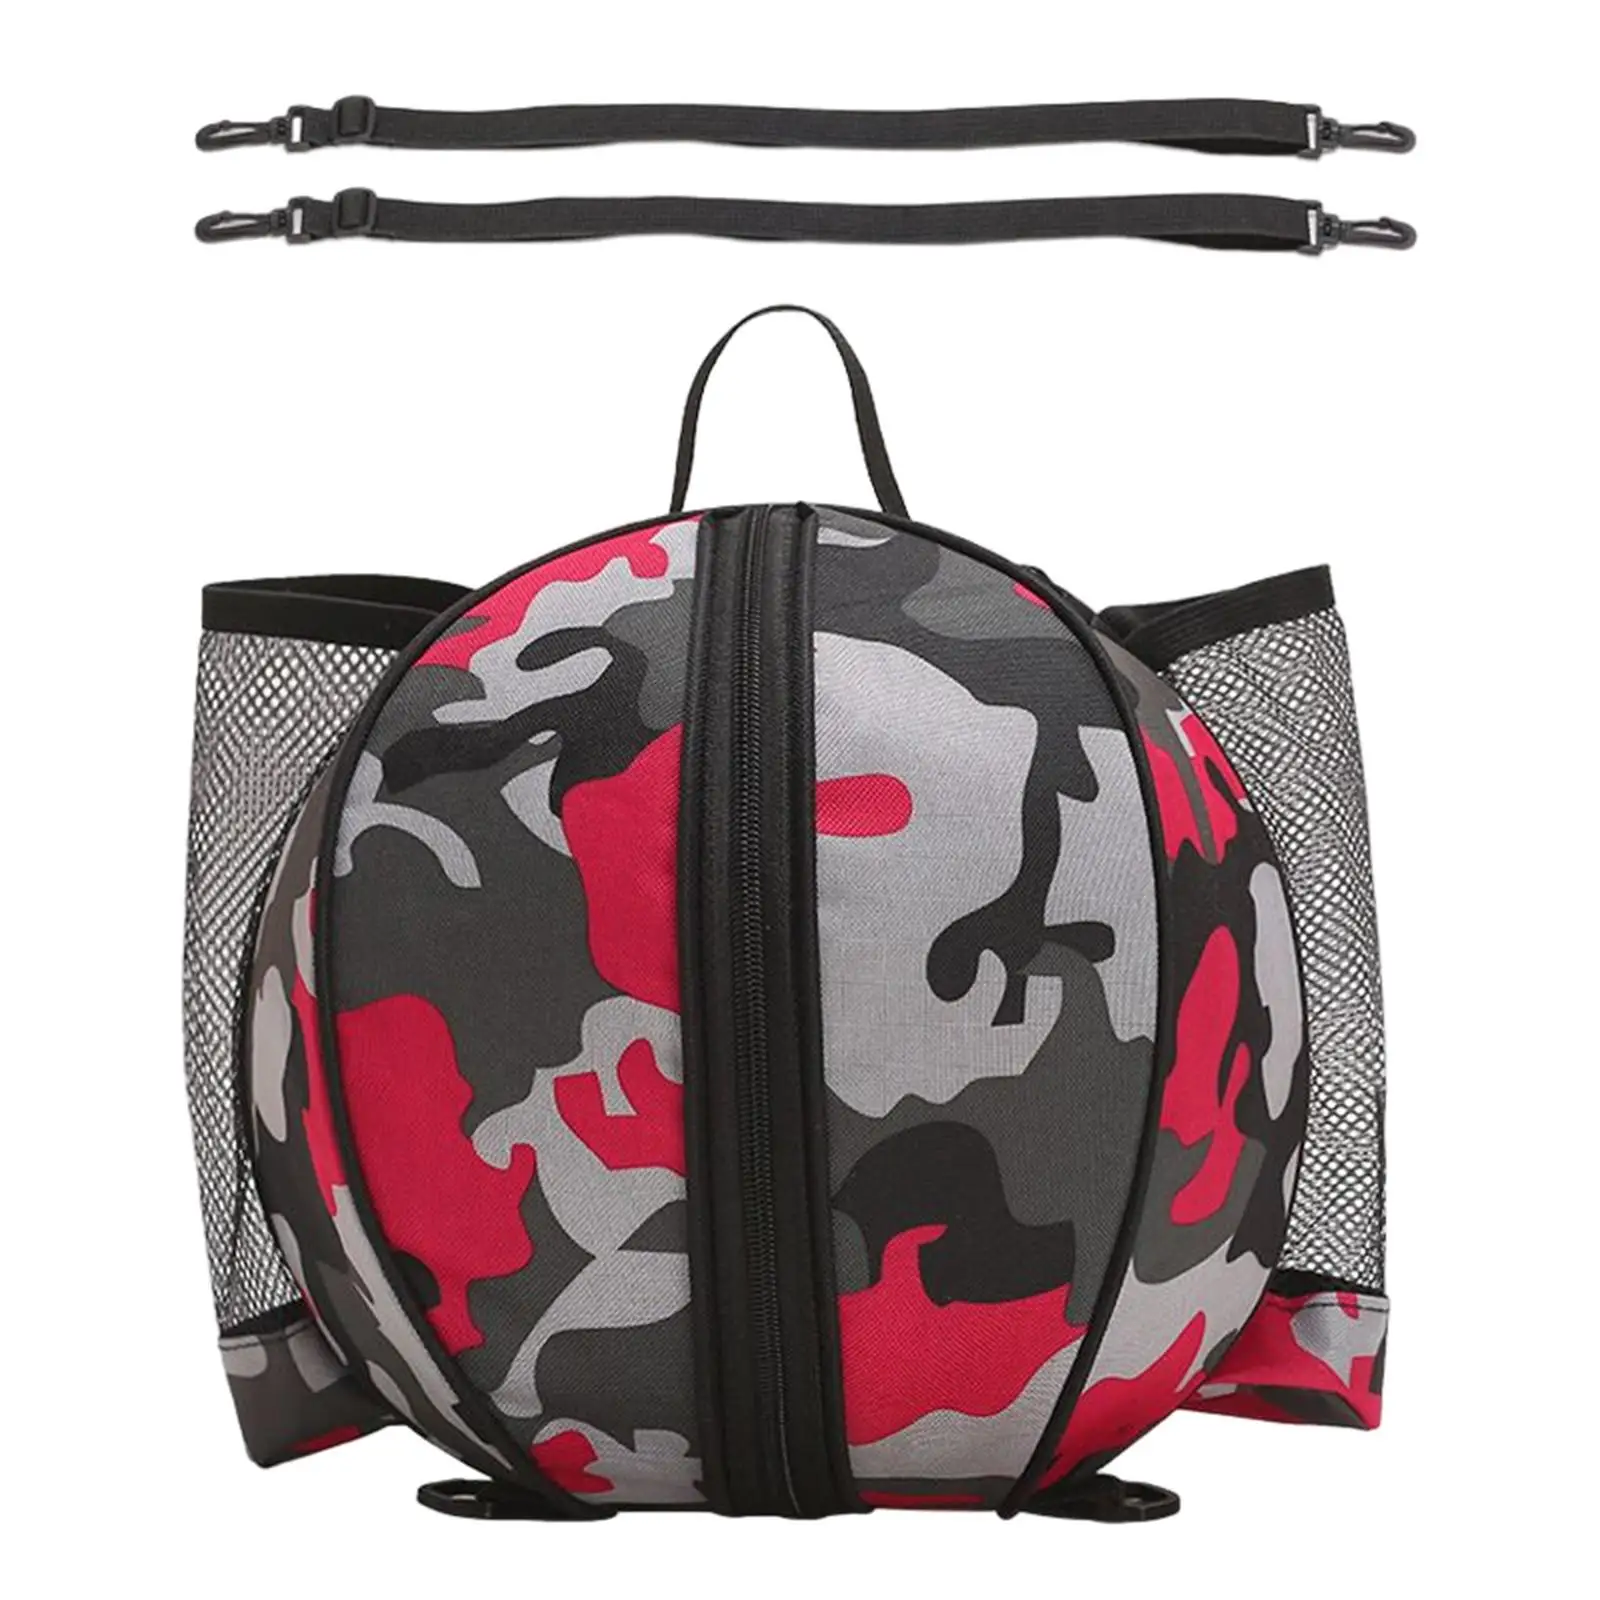 Universal Basketball Bag Backpack Mesh Pockets Soccer Storage Handbag for Basketball Sports Equipment Training Men Women